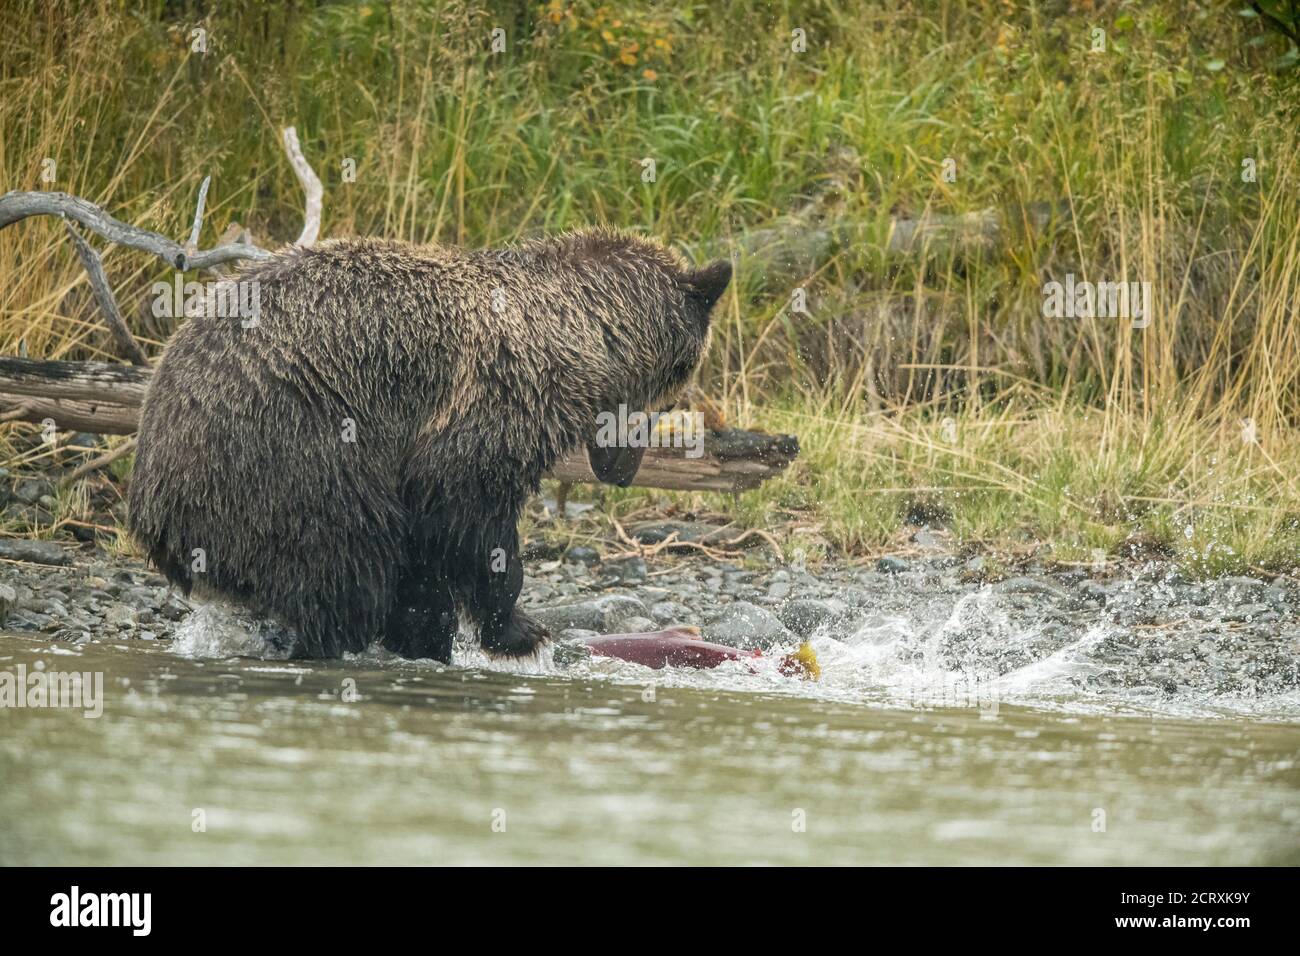 Ours grizzli (Ursus arctos) - mère ours chasse le saumon rouge fraye dans une rivière à saumon, Chilcotin Wilderness, BC Interior, Canada Banque D'Images